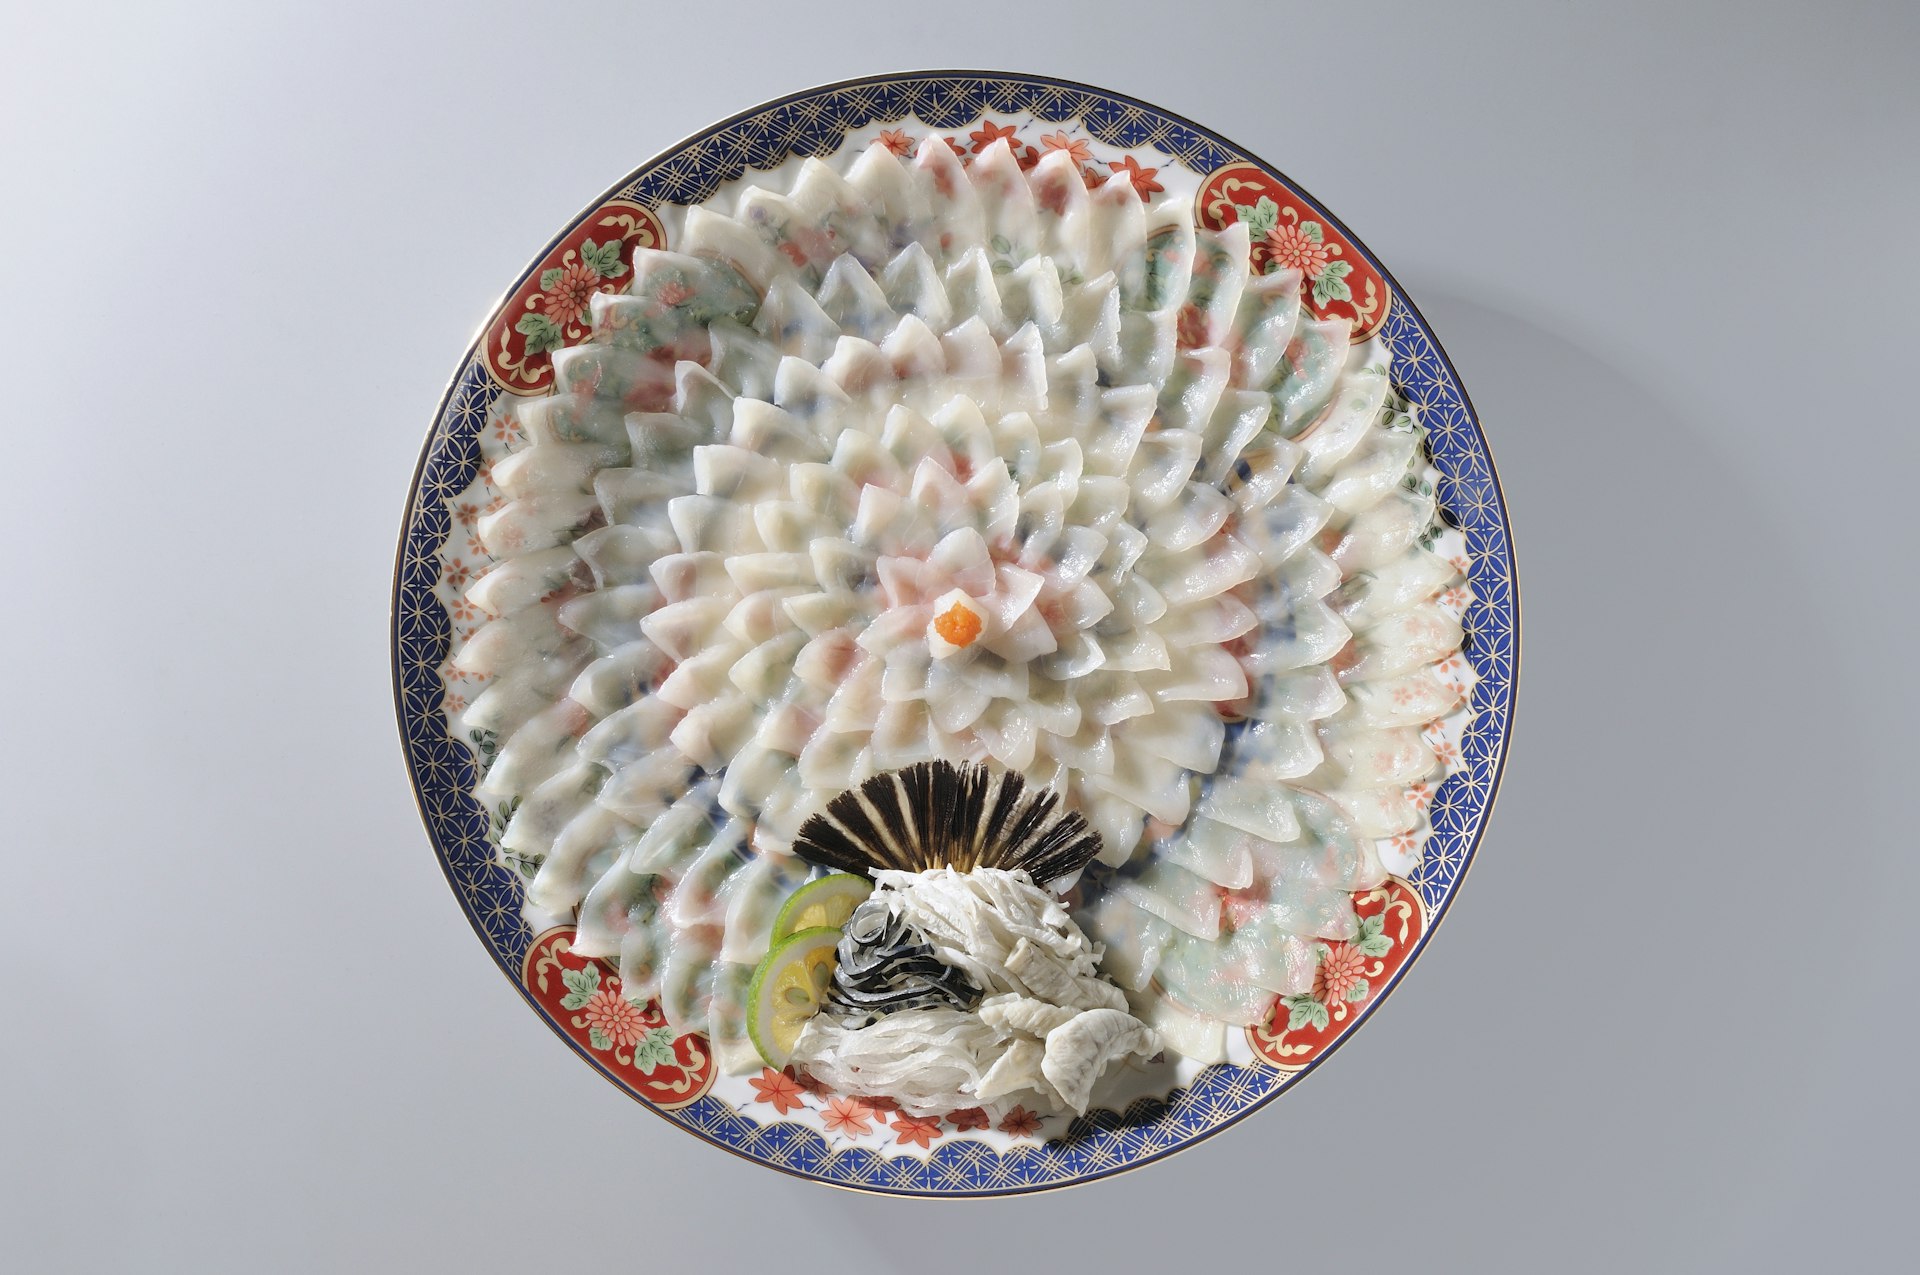 Tunt skivad fugu (pufferfisk) är intrikat arrangerad i form av en blomma på en färgglad tallrik. 